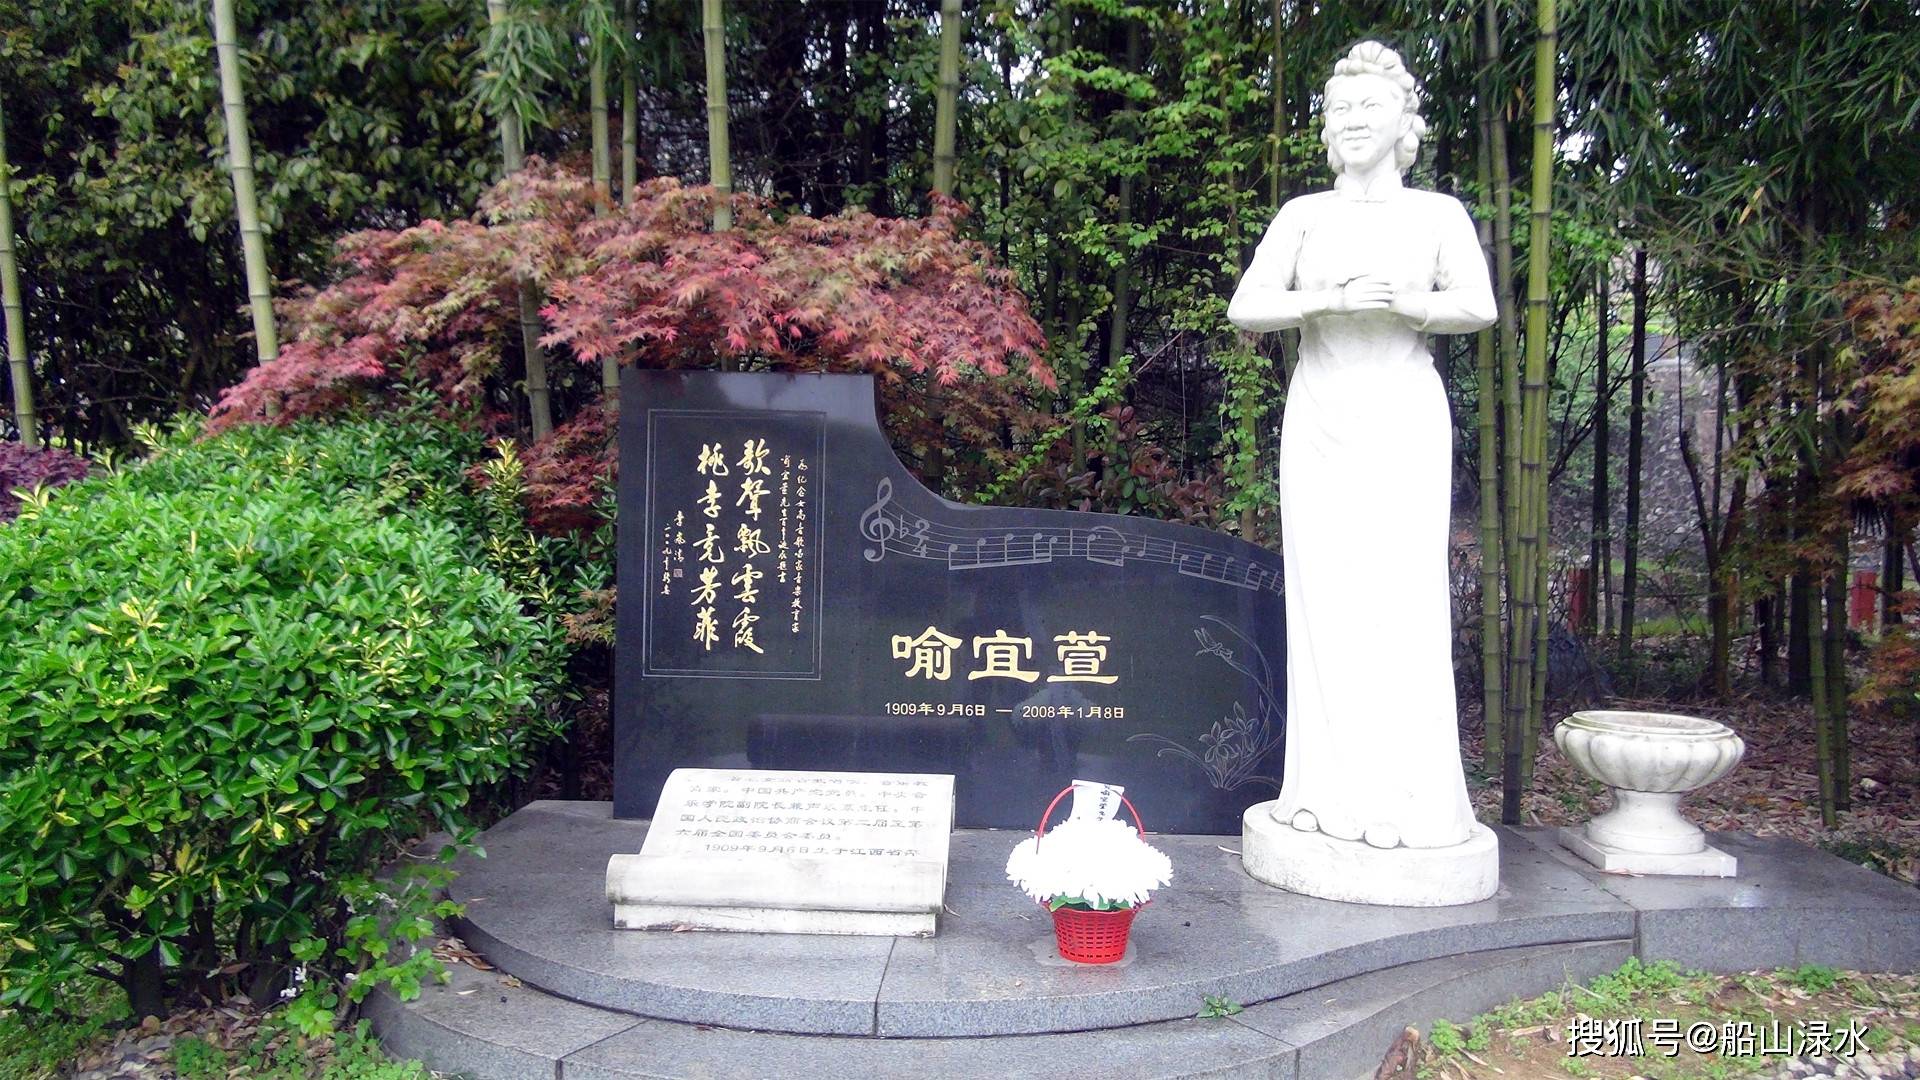 萍乡人文公园中的名人墓地